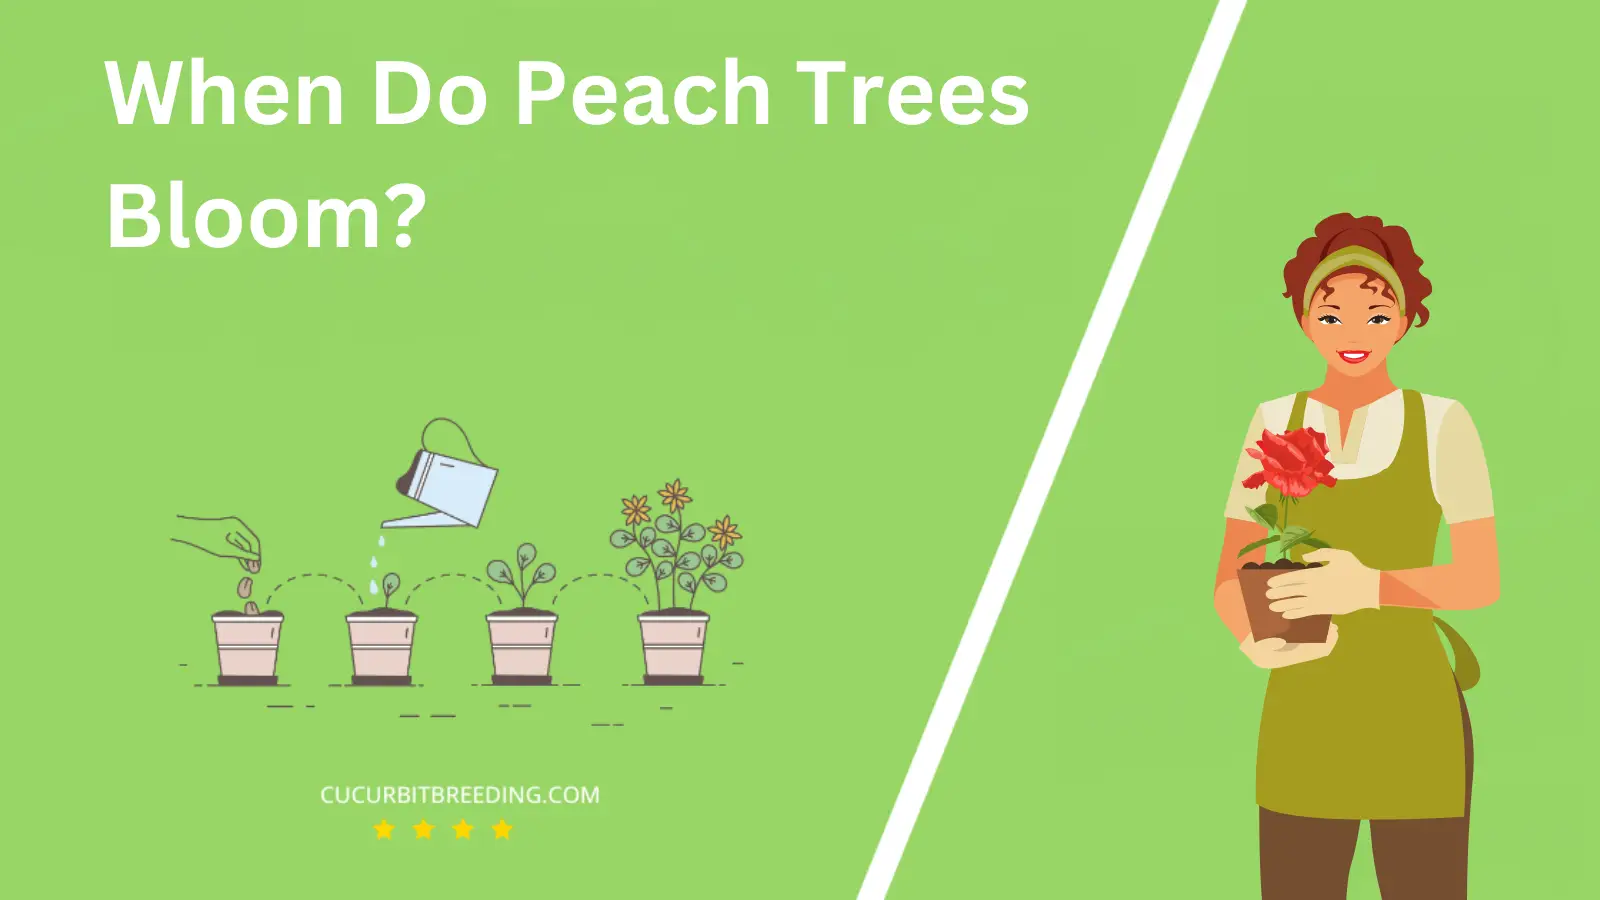 When Do Peach Trees Bloom?